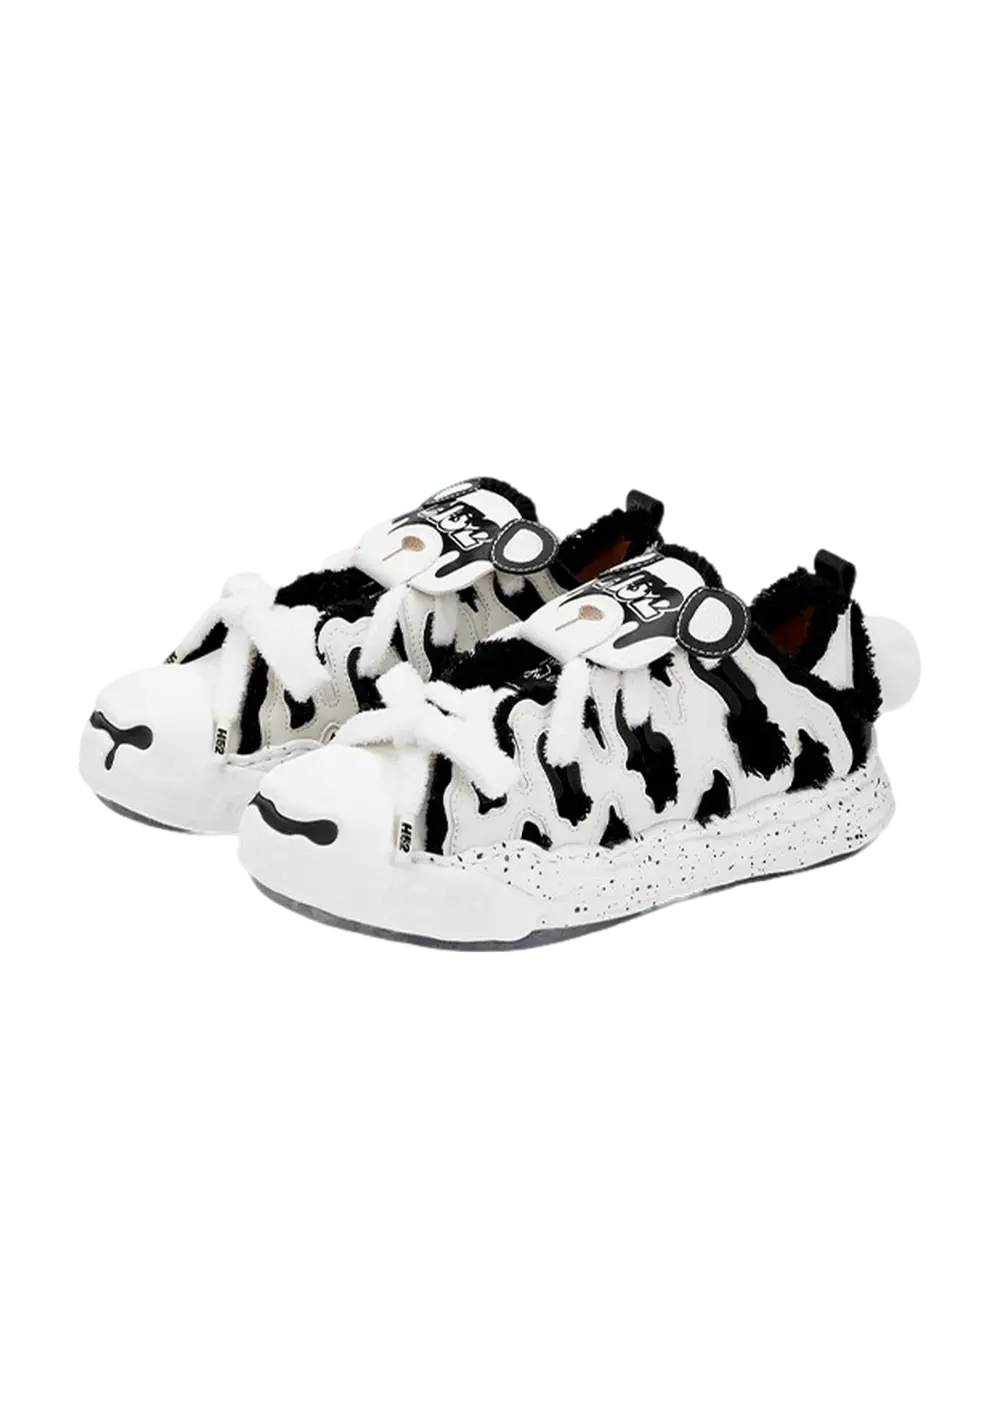 Canvas Cream Shoes - Panda - PSYLOS 1, Canvas Cream Shoes - Panda, Shoes, H52, PSYLOS 1